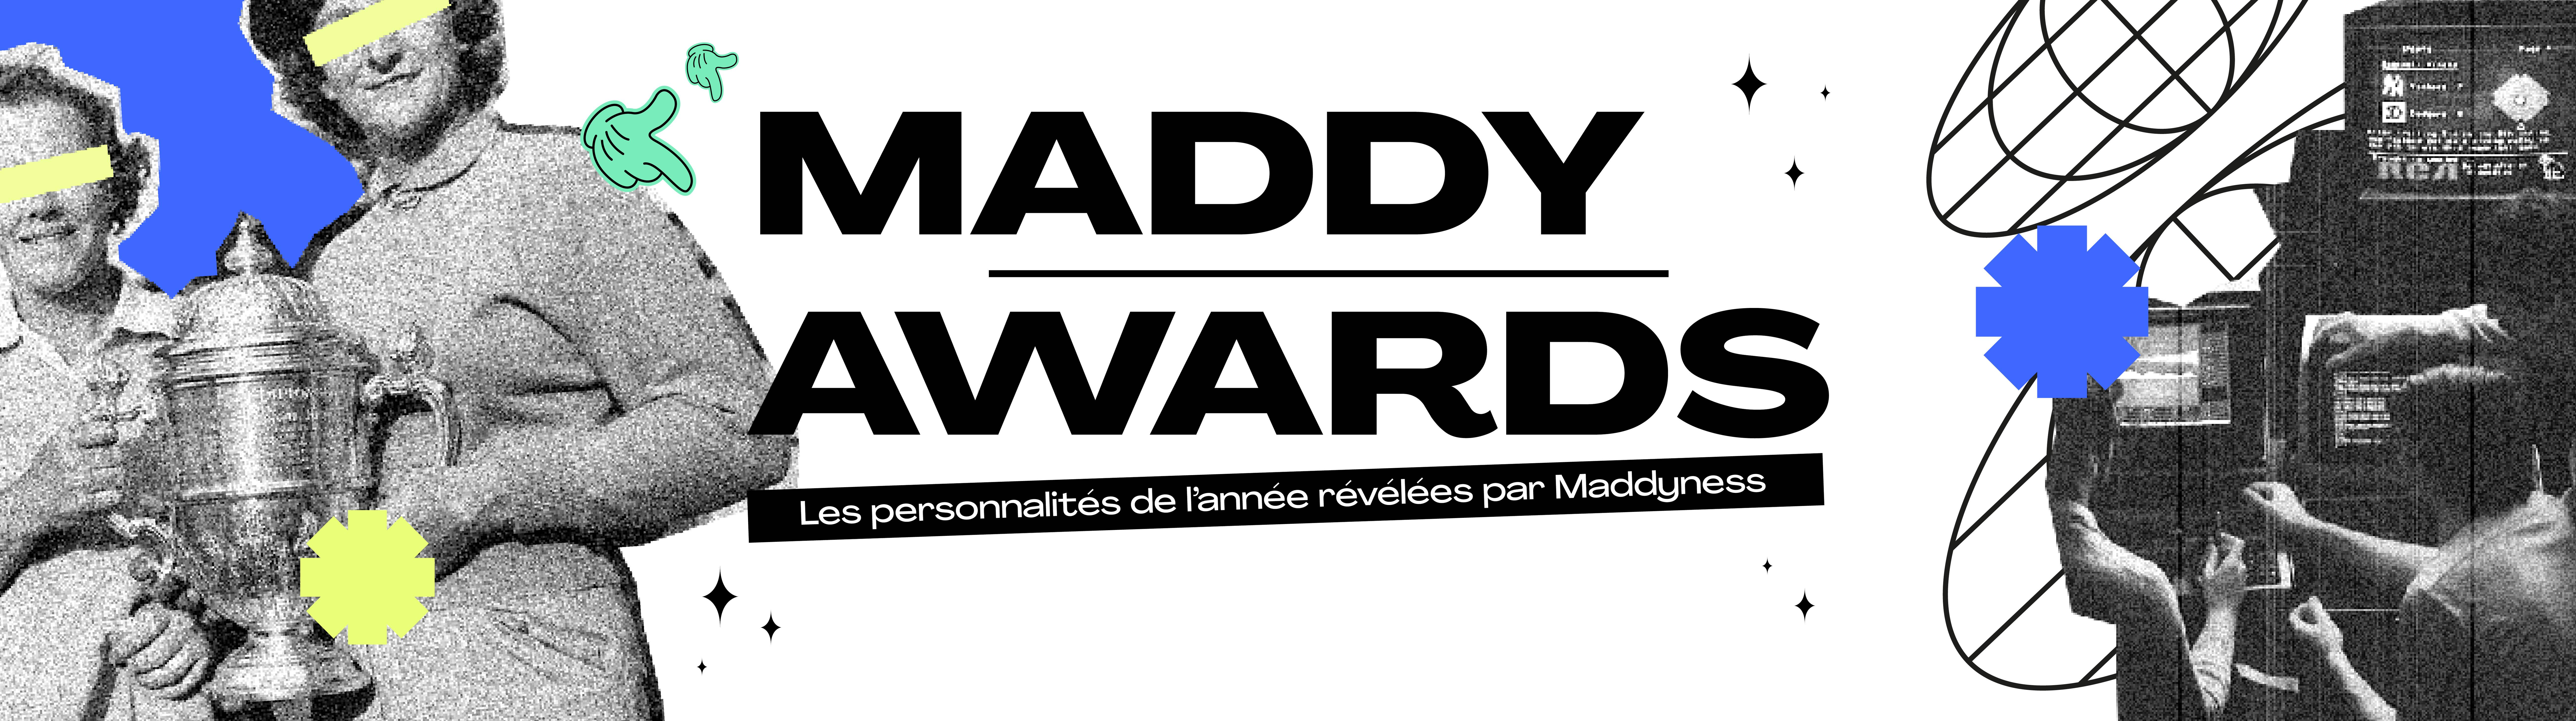 MADDY_AWARDS